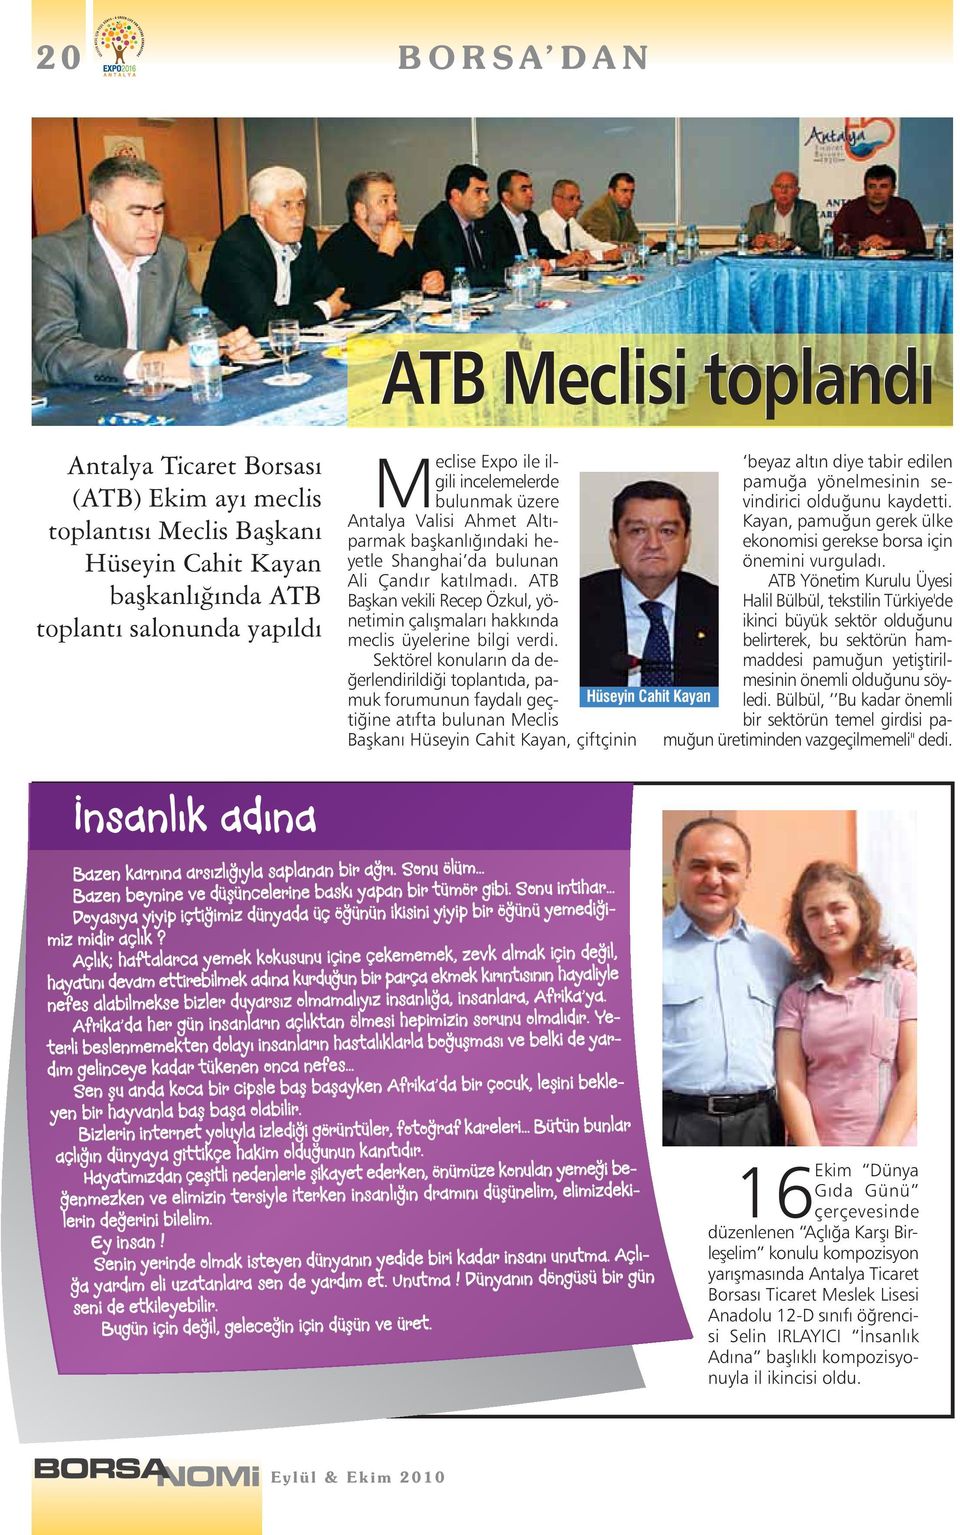 ATB Başkan vekili Recep Özkul, yönetimin çalışmaları hakkında meclis üyelerine bilgi verdi.